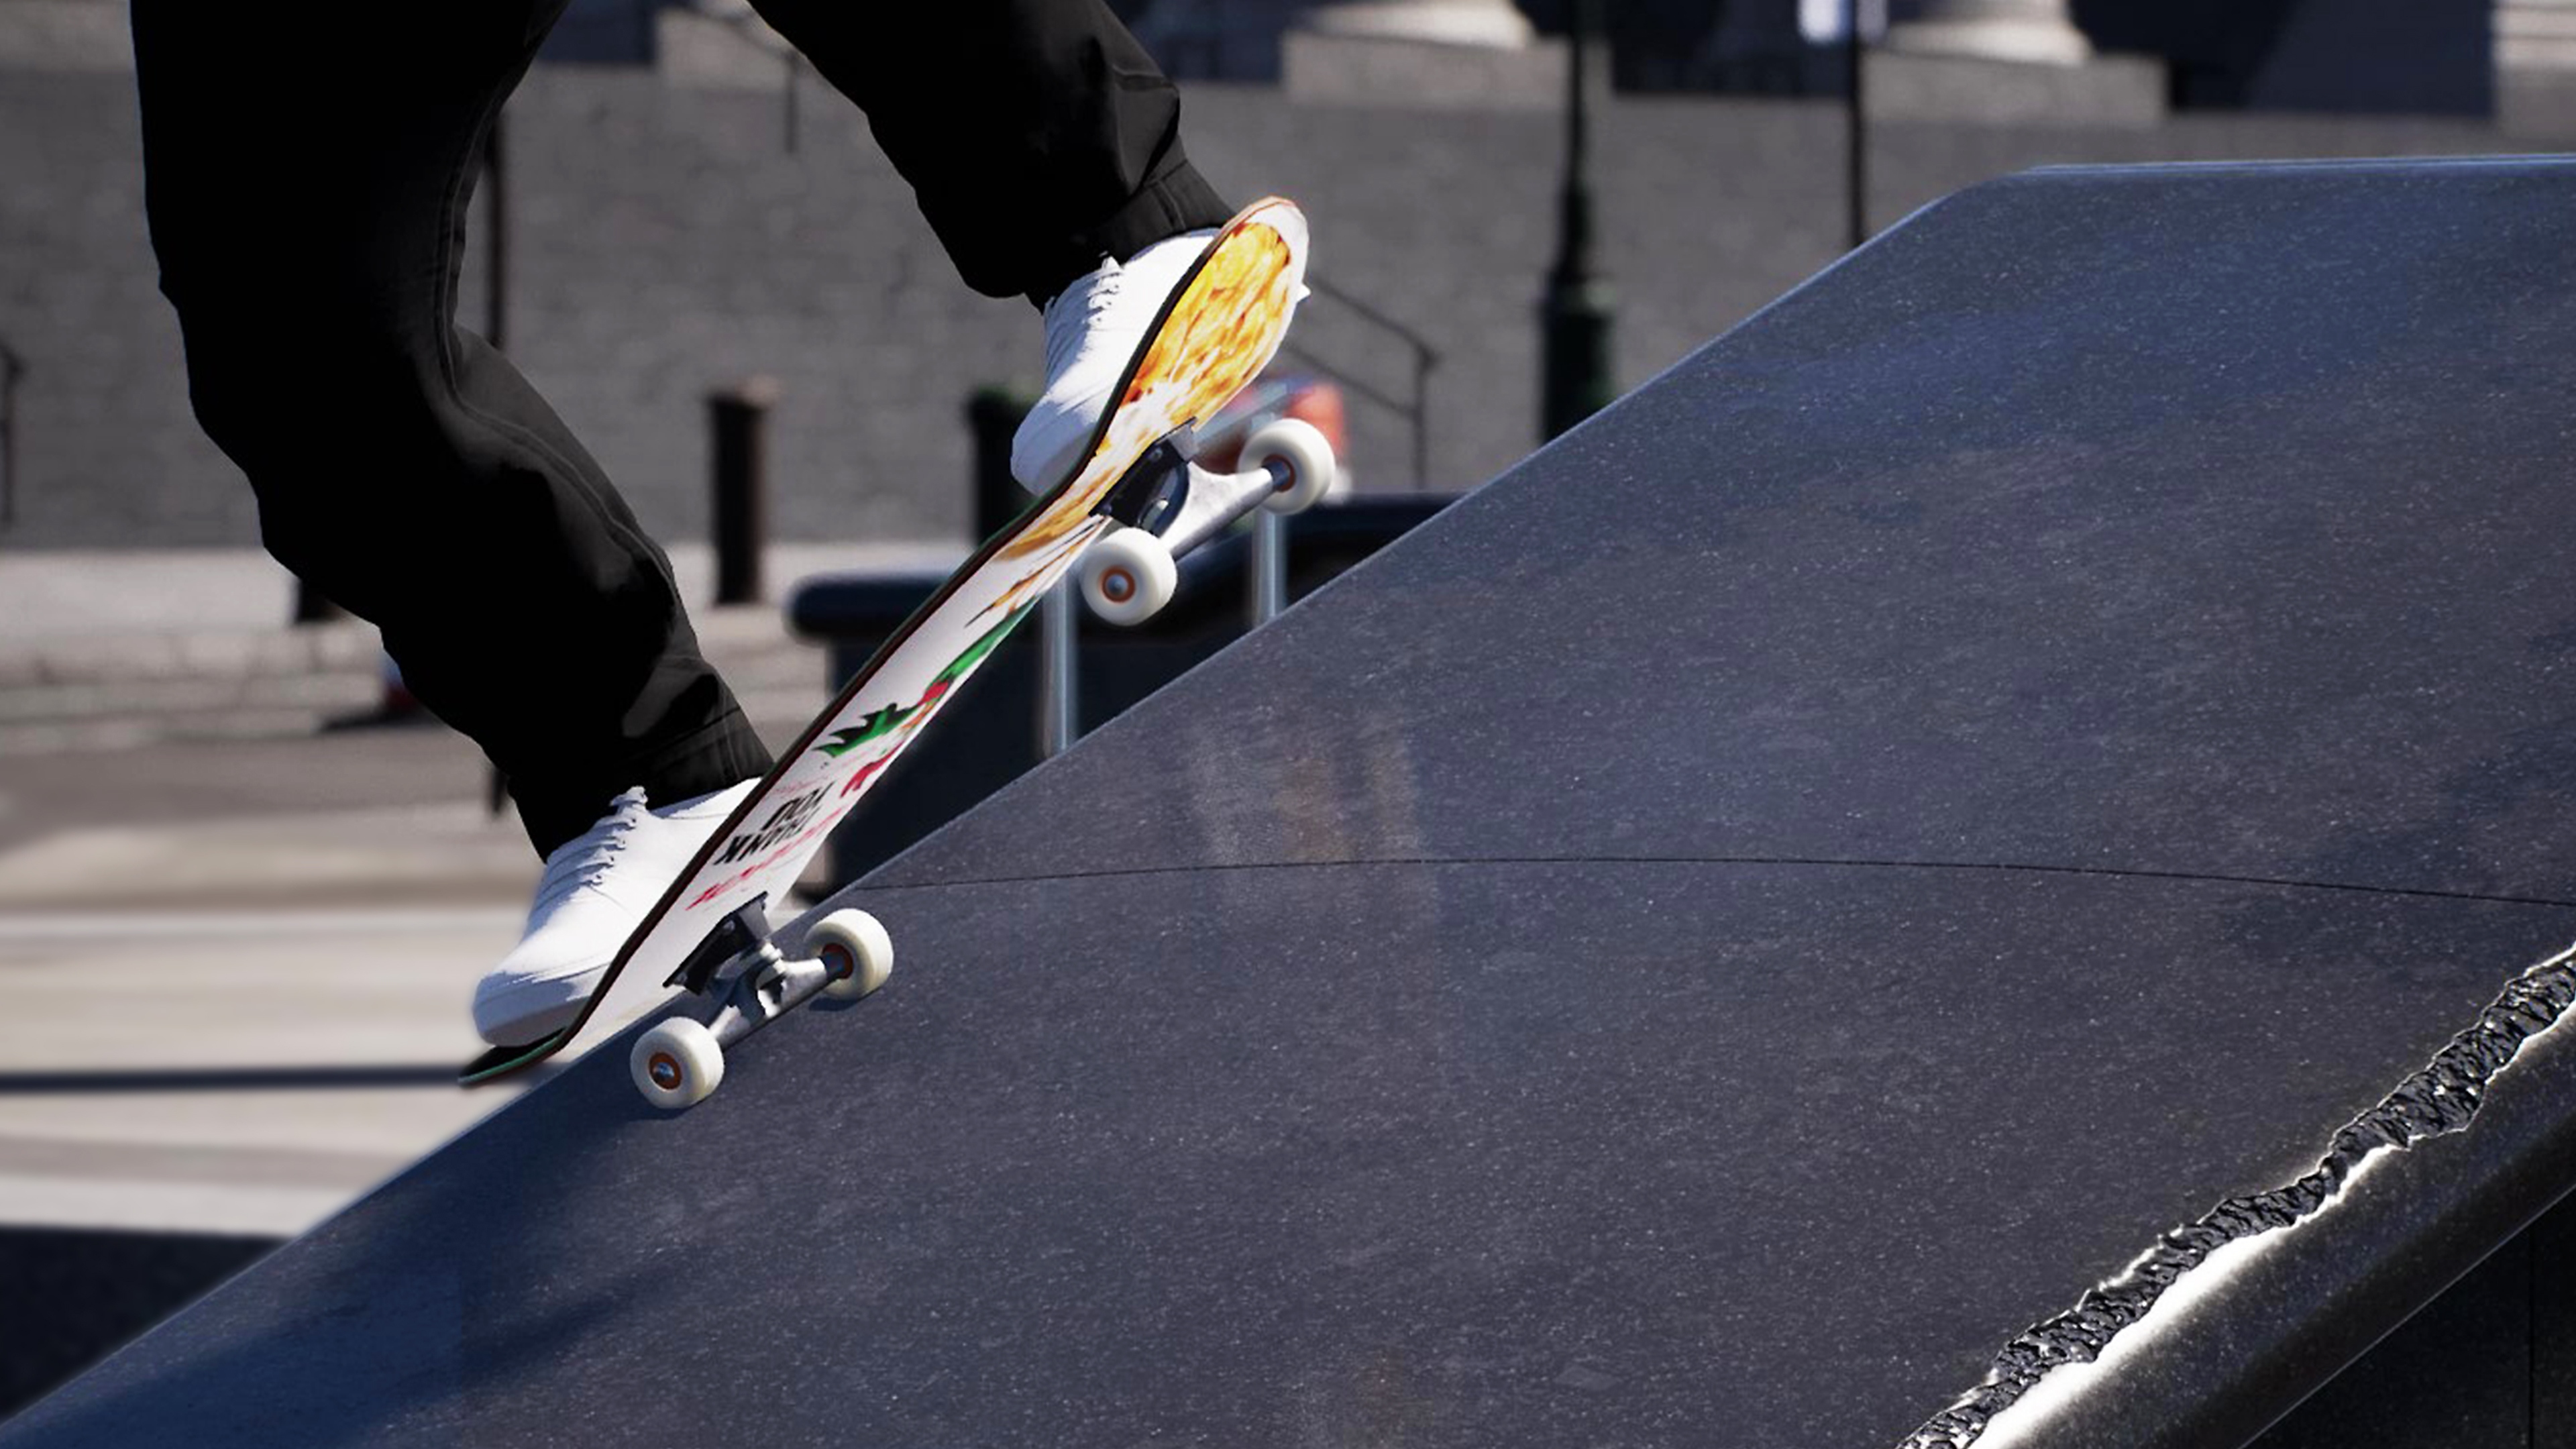 Session: Skate Sim - Capture d'écran montrant un skateboarder faisant un grind sur un rebord